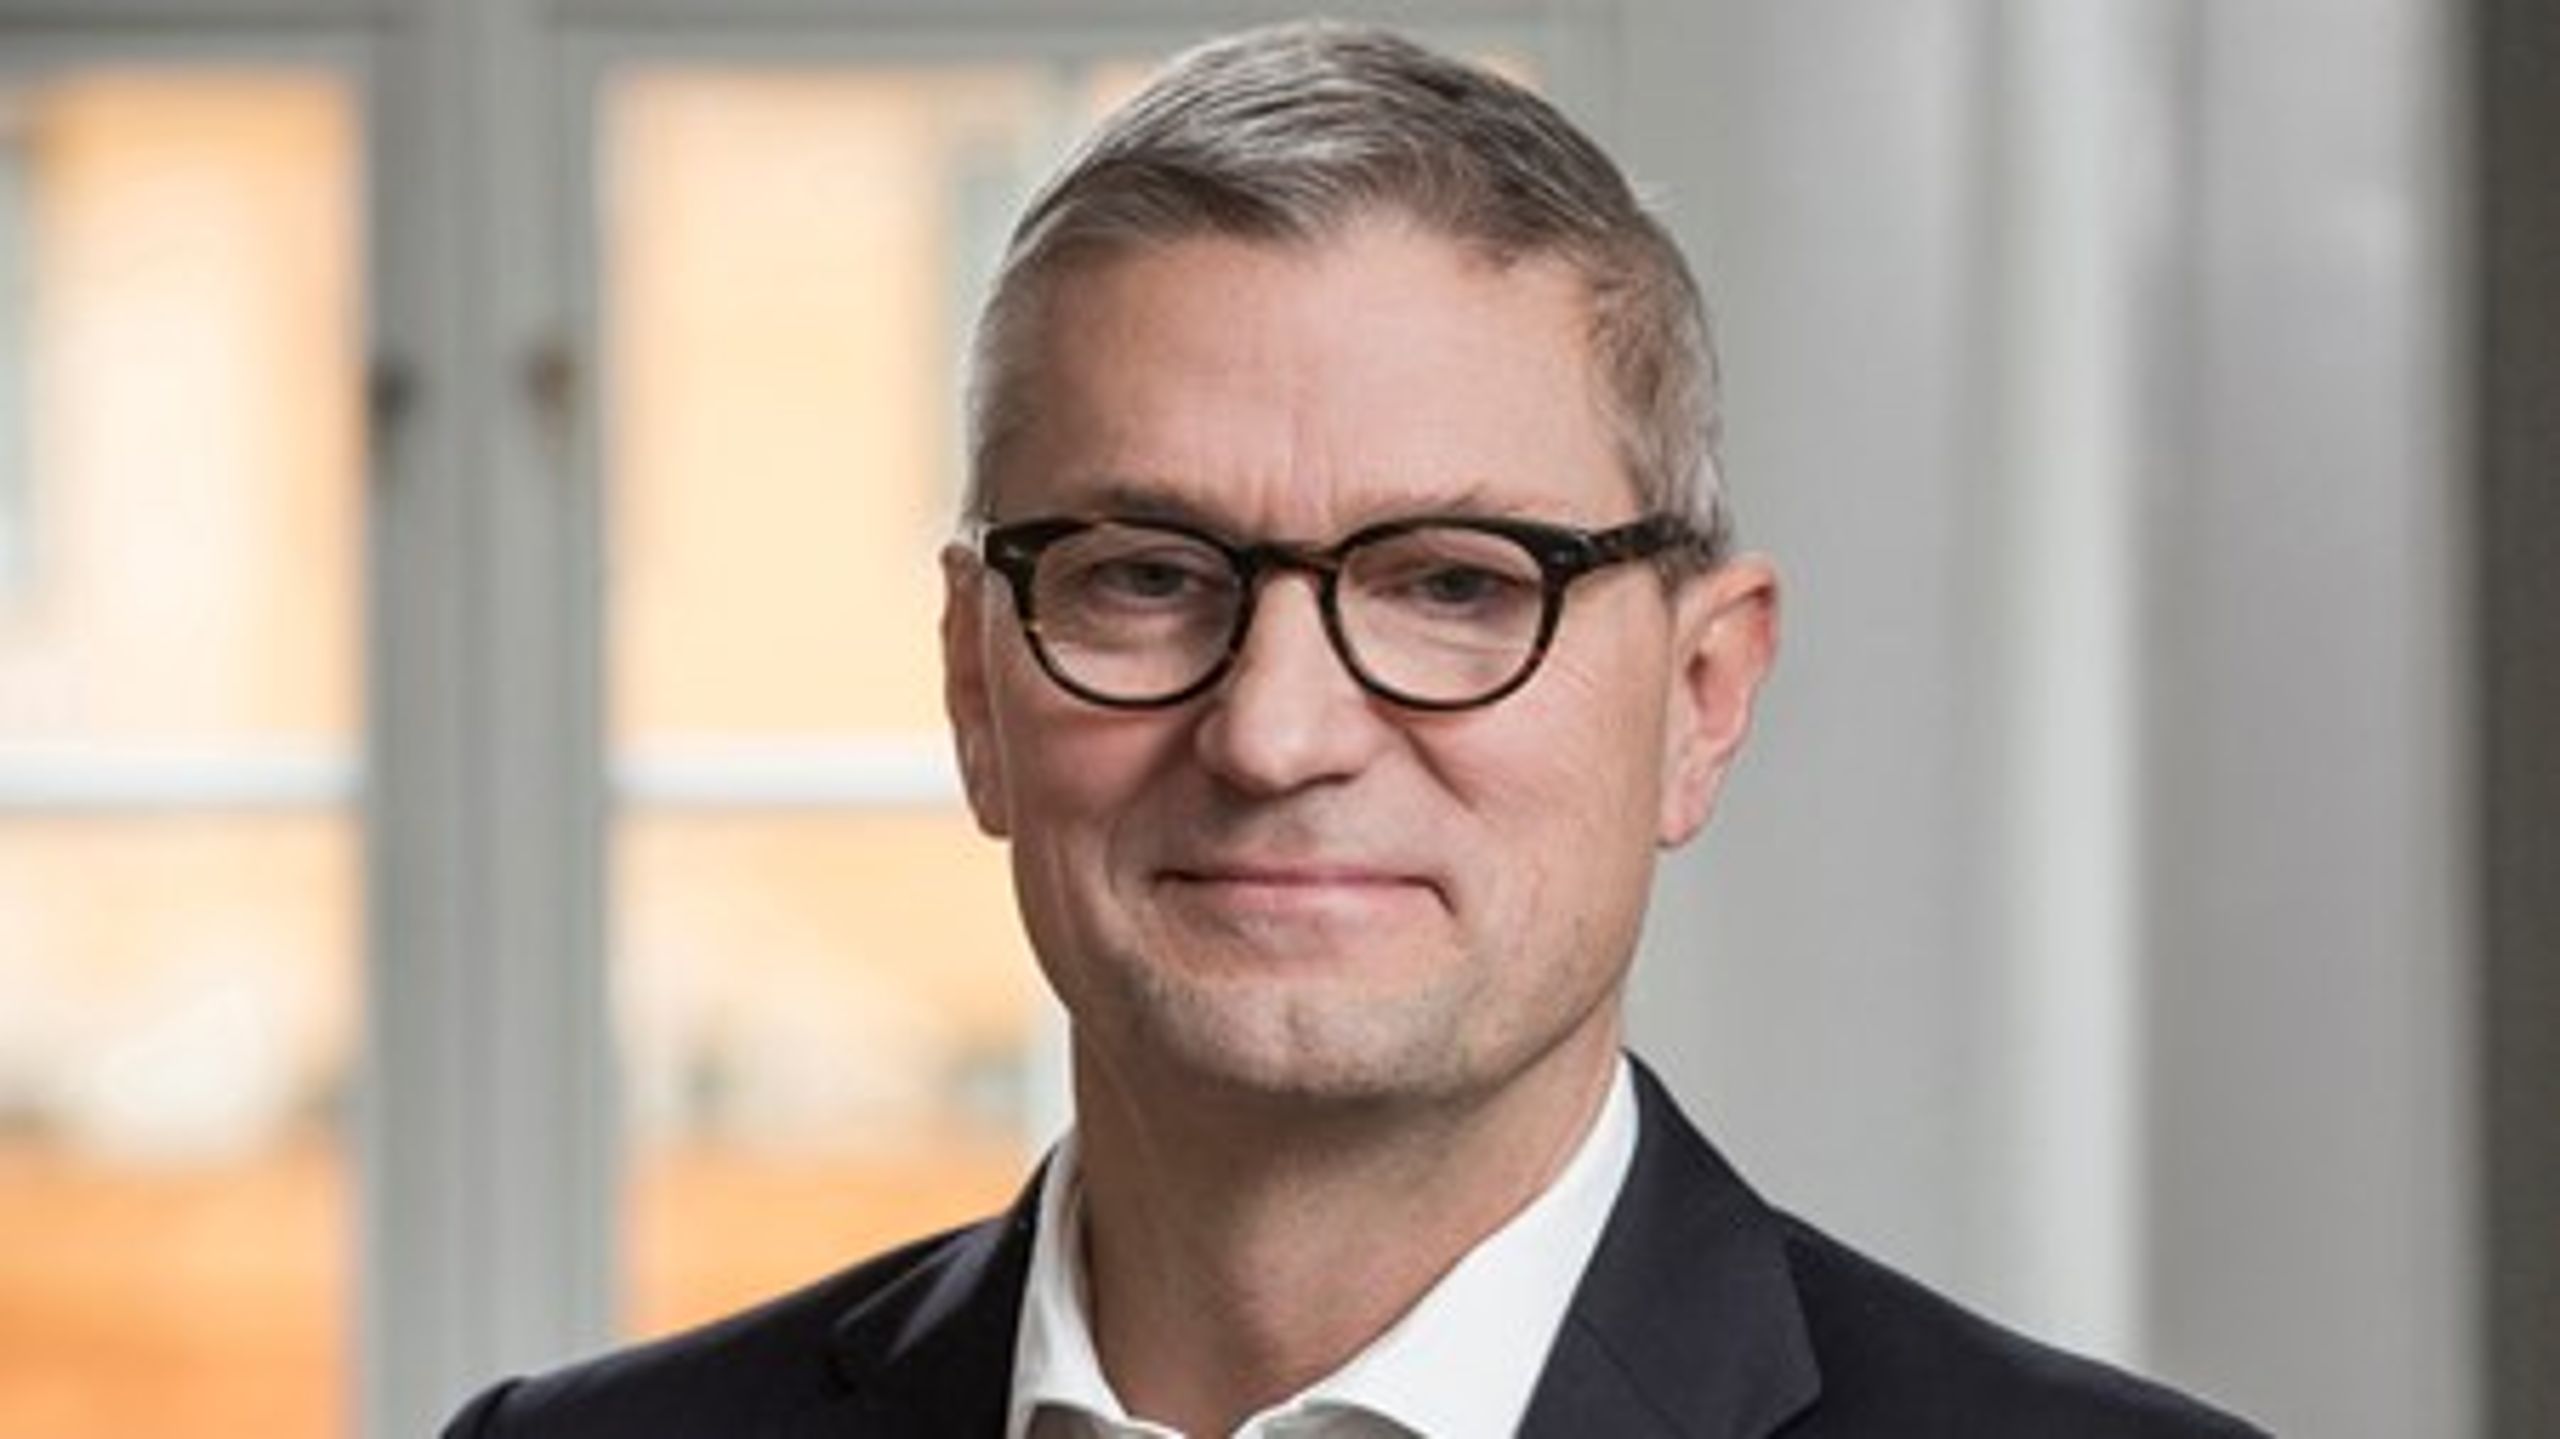 Administrerende direktør i DTL - Danske Vognmænd, Erik Østergaard, håber, at 2016 bliver året, hvor den kritiske forbruger også træffer sit valg på baggrund af, om man har tillid til valget af distributører.